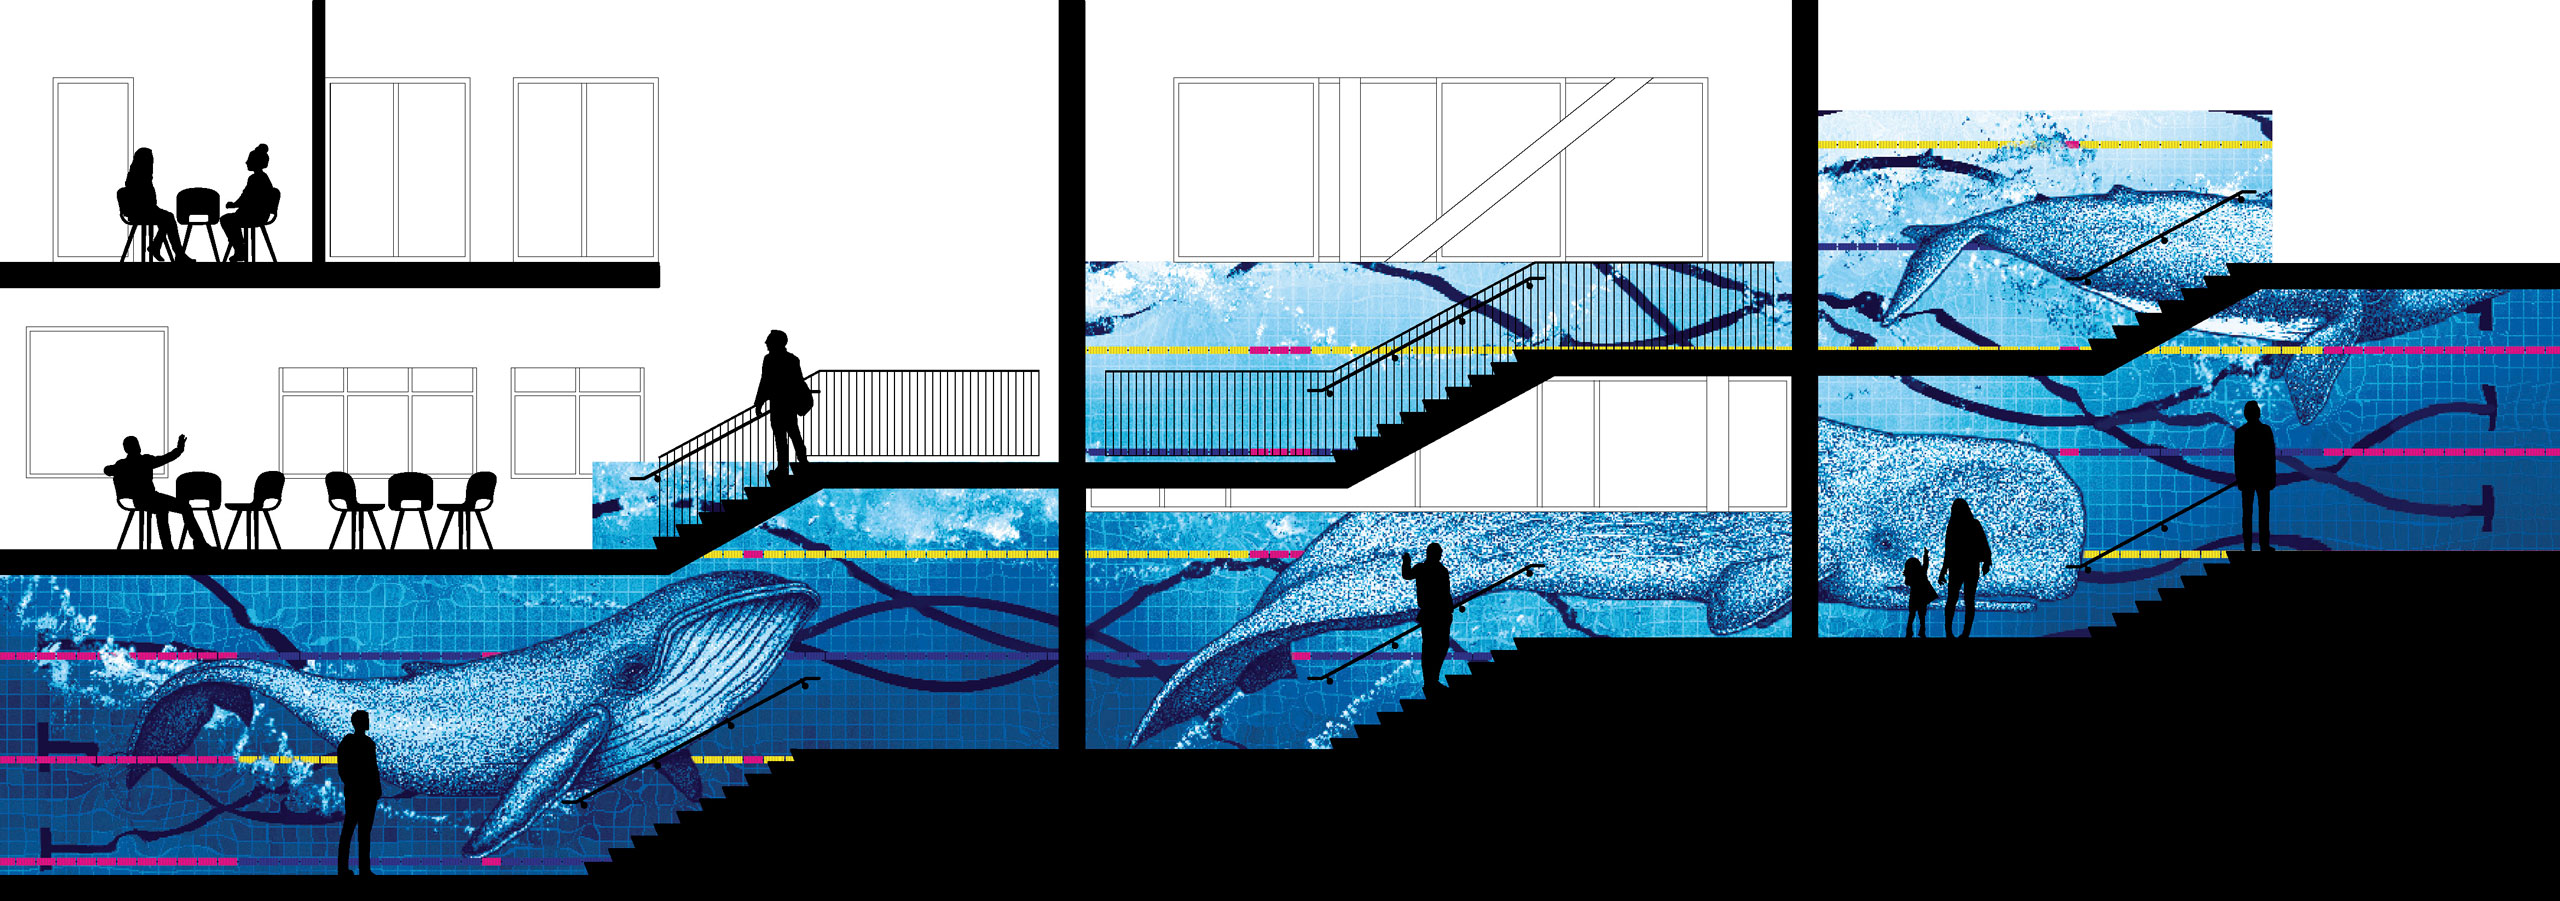 鹿特丹水上运动中心环境图形设计 © SILO